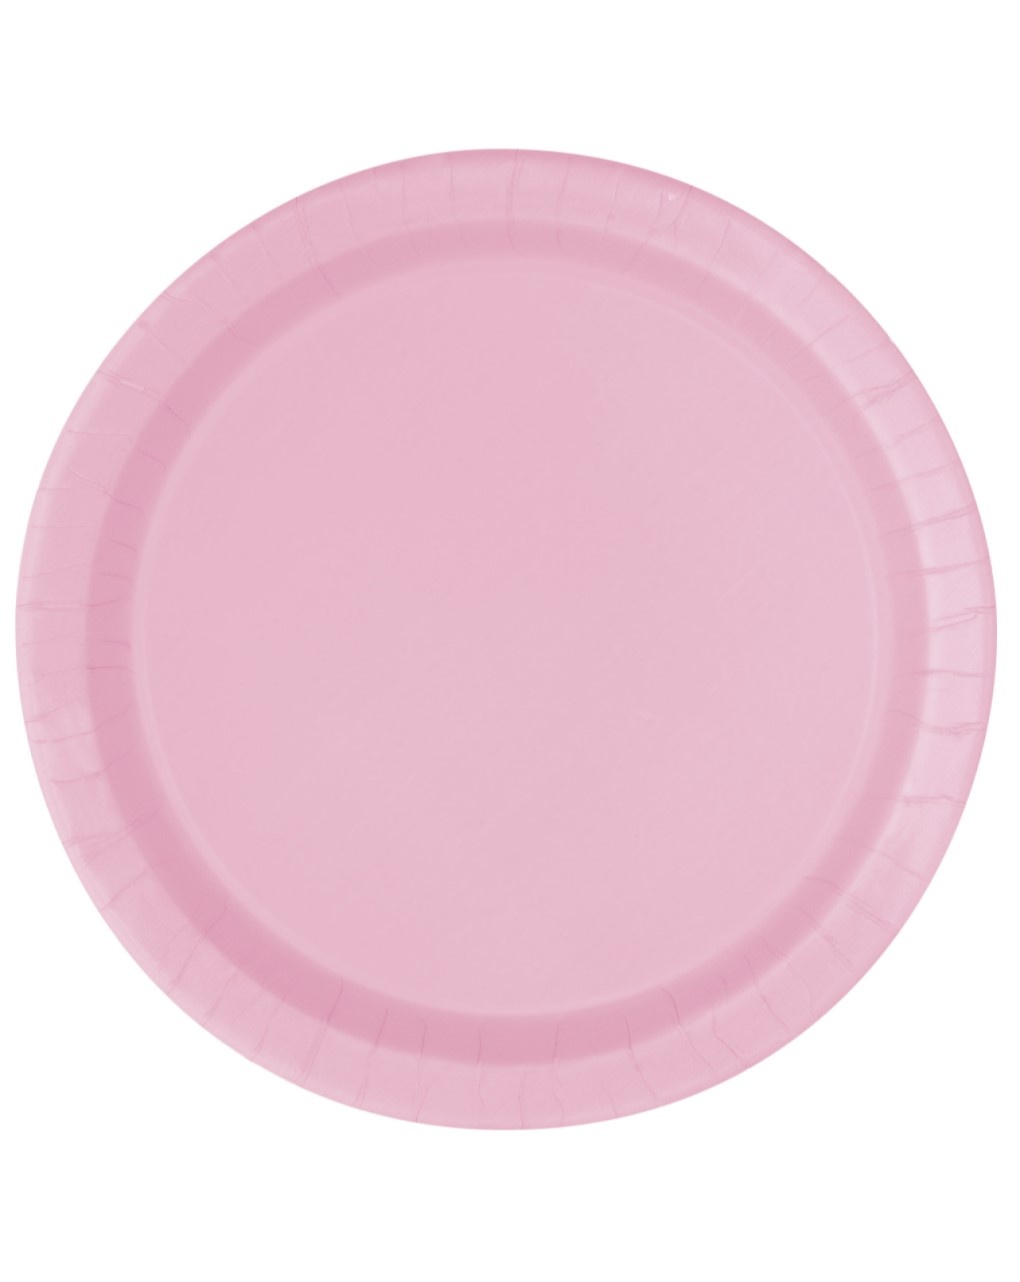 Piatto carta 23 cm - 16 pezzi - rosa pastello